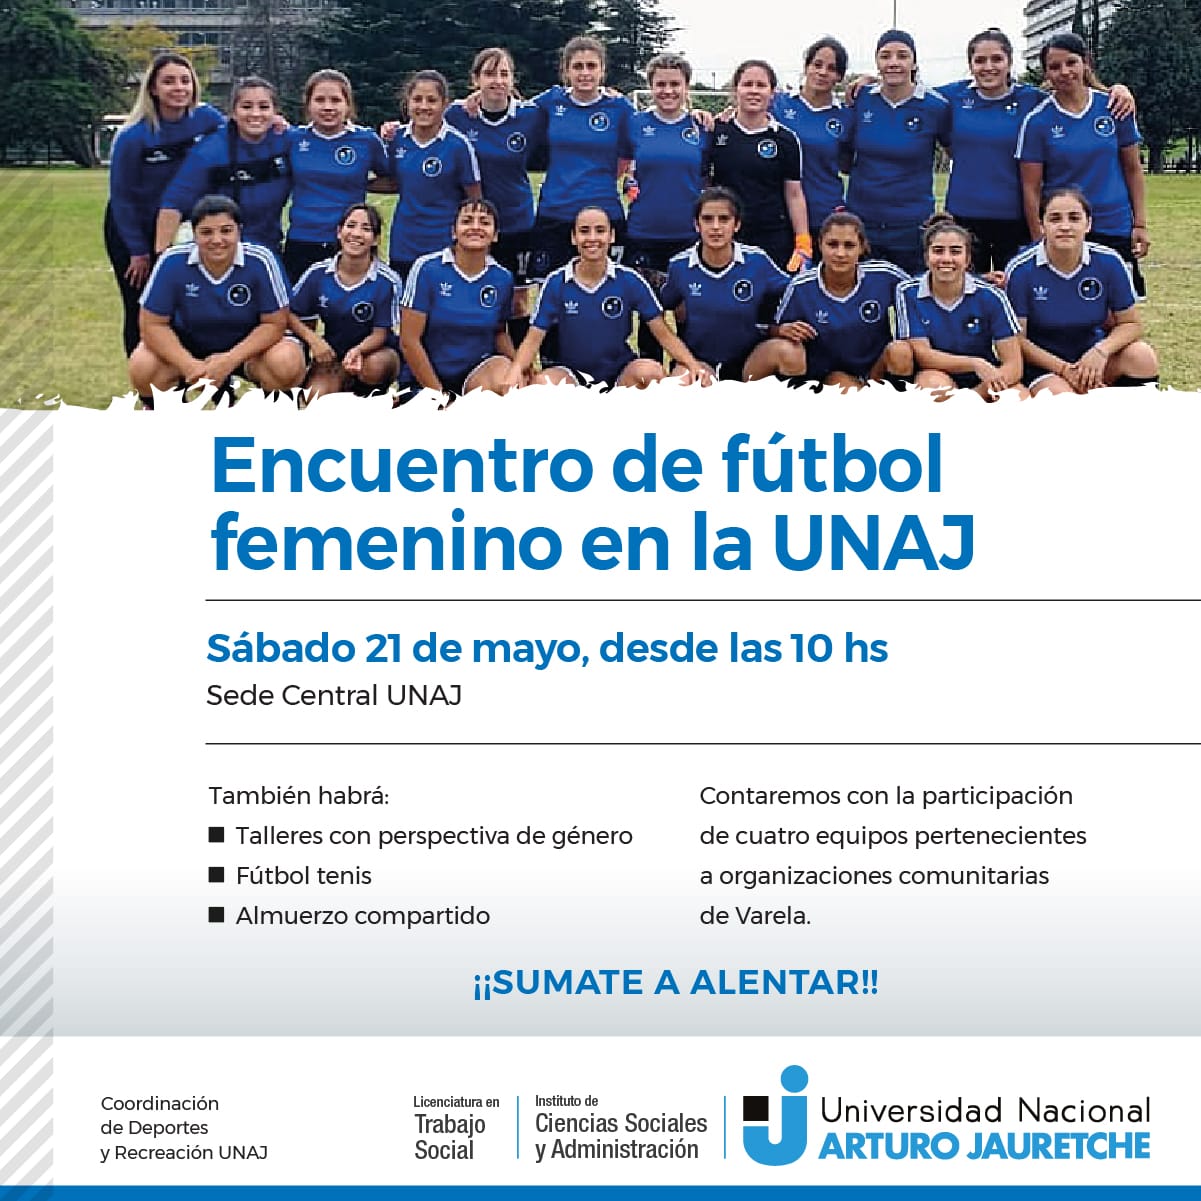 Este Sábado Se Realizará El Encuentro De Fútbol Femenino En La UNAJ